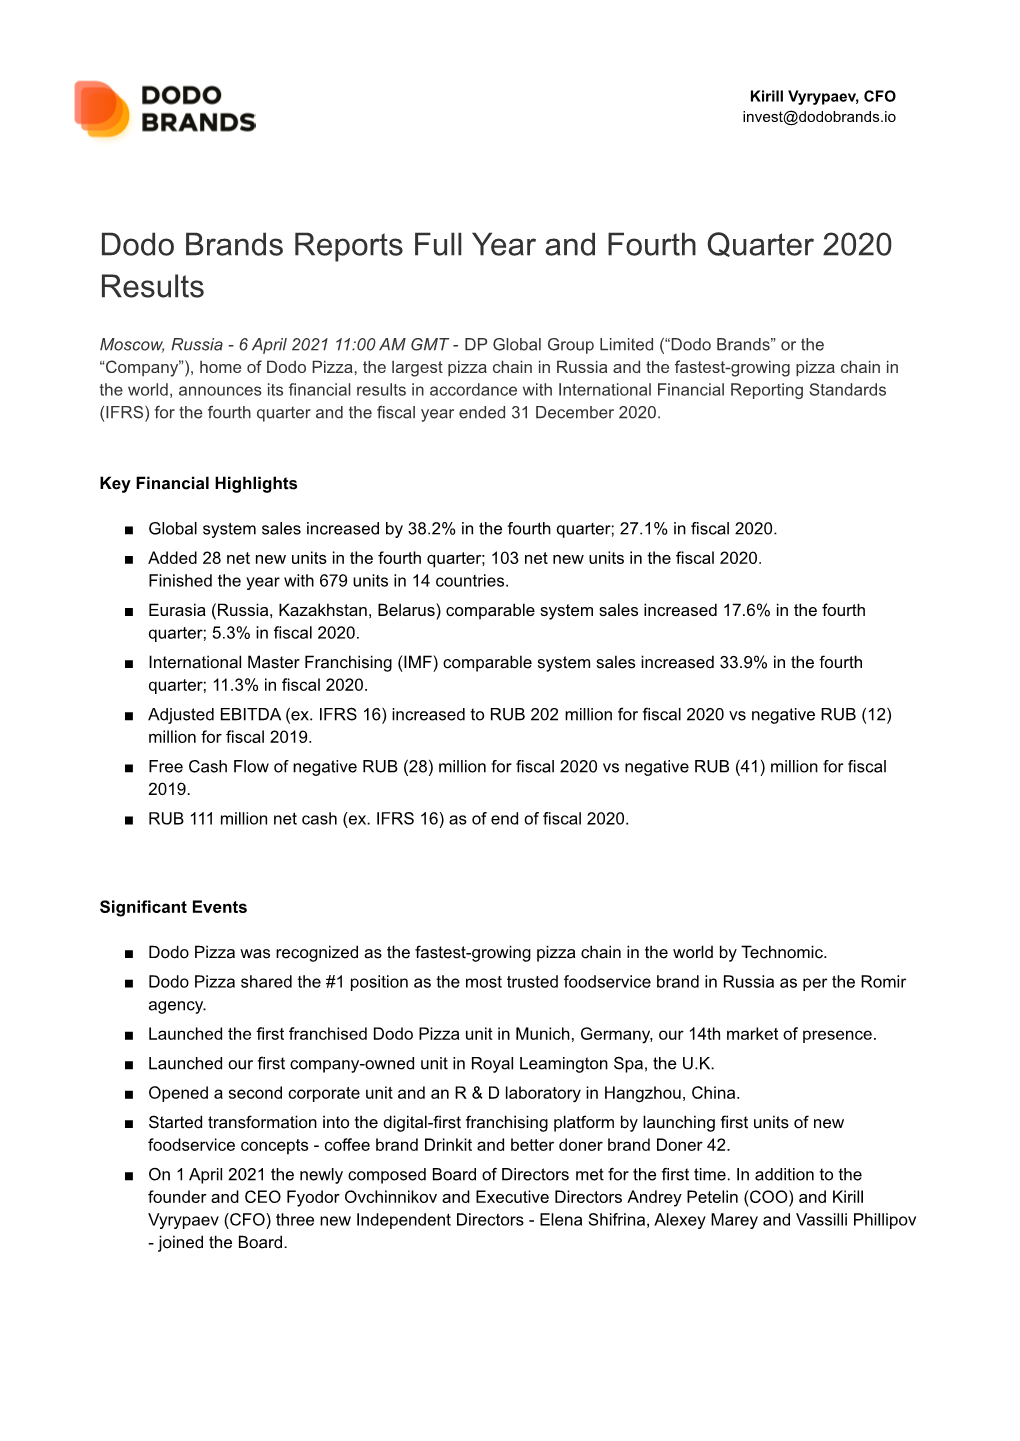 Dodo Brands FY 2020 Earnings Release